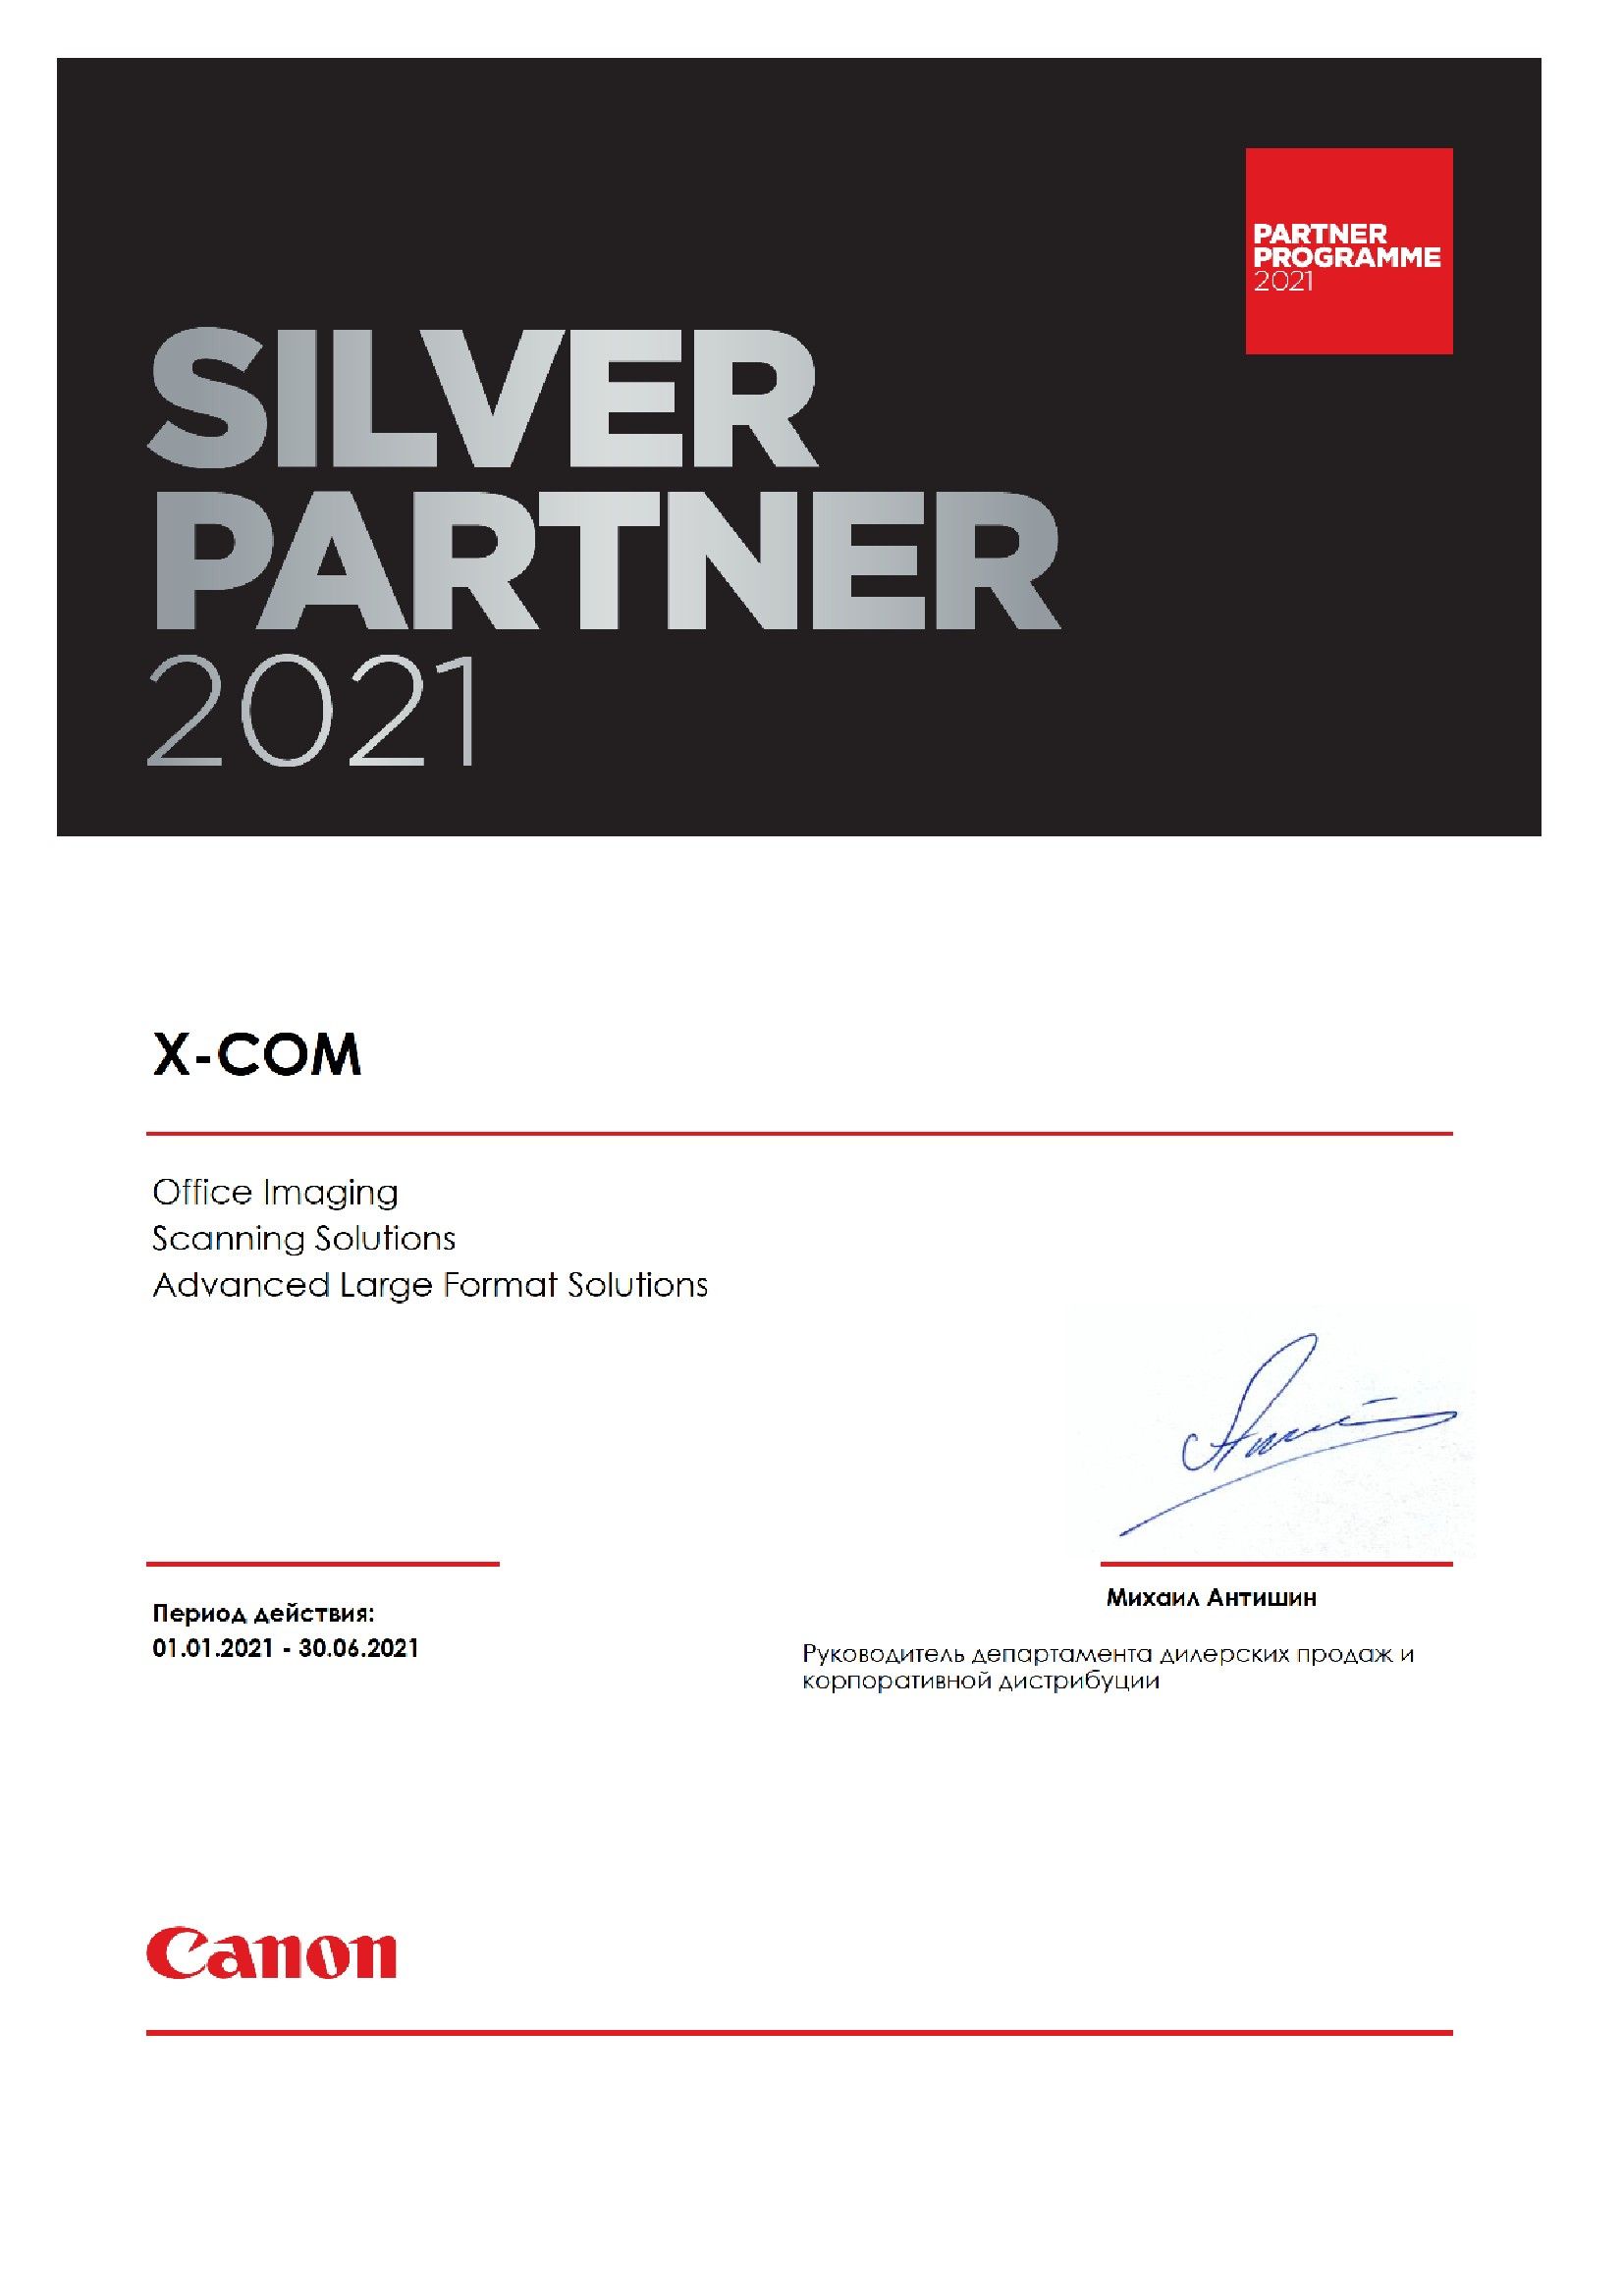 X-Com – Серебряный партнер Canon